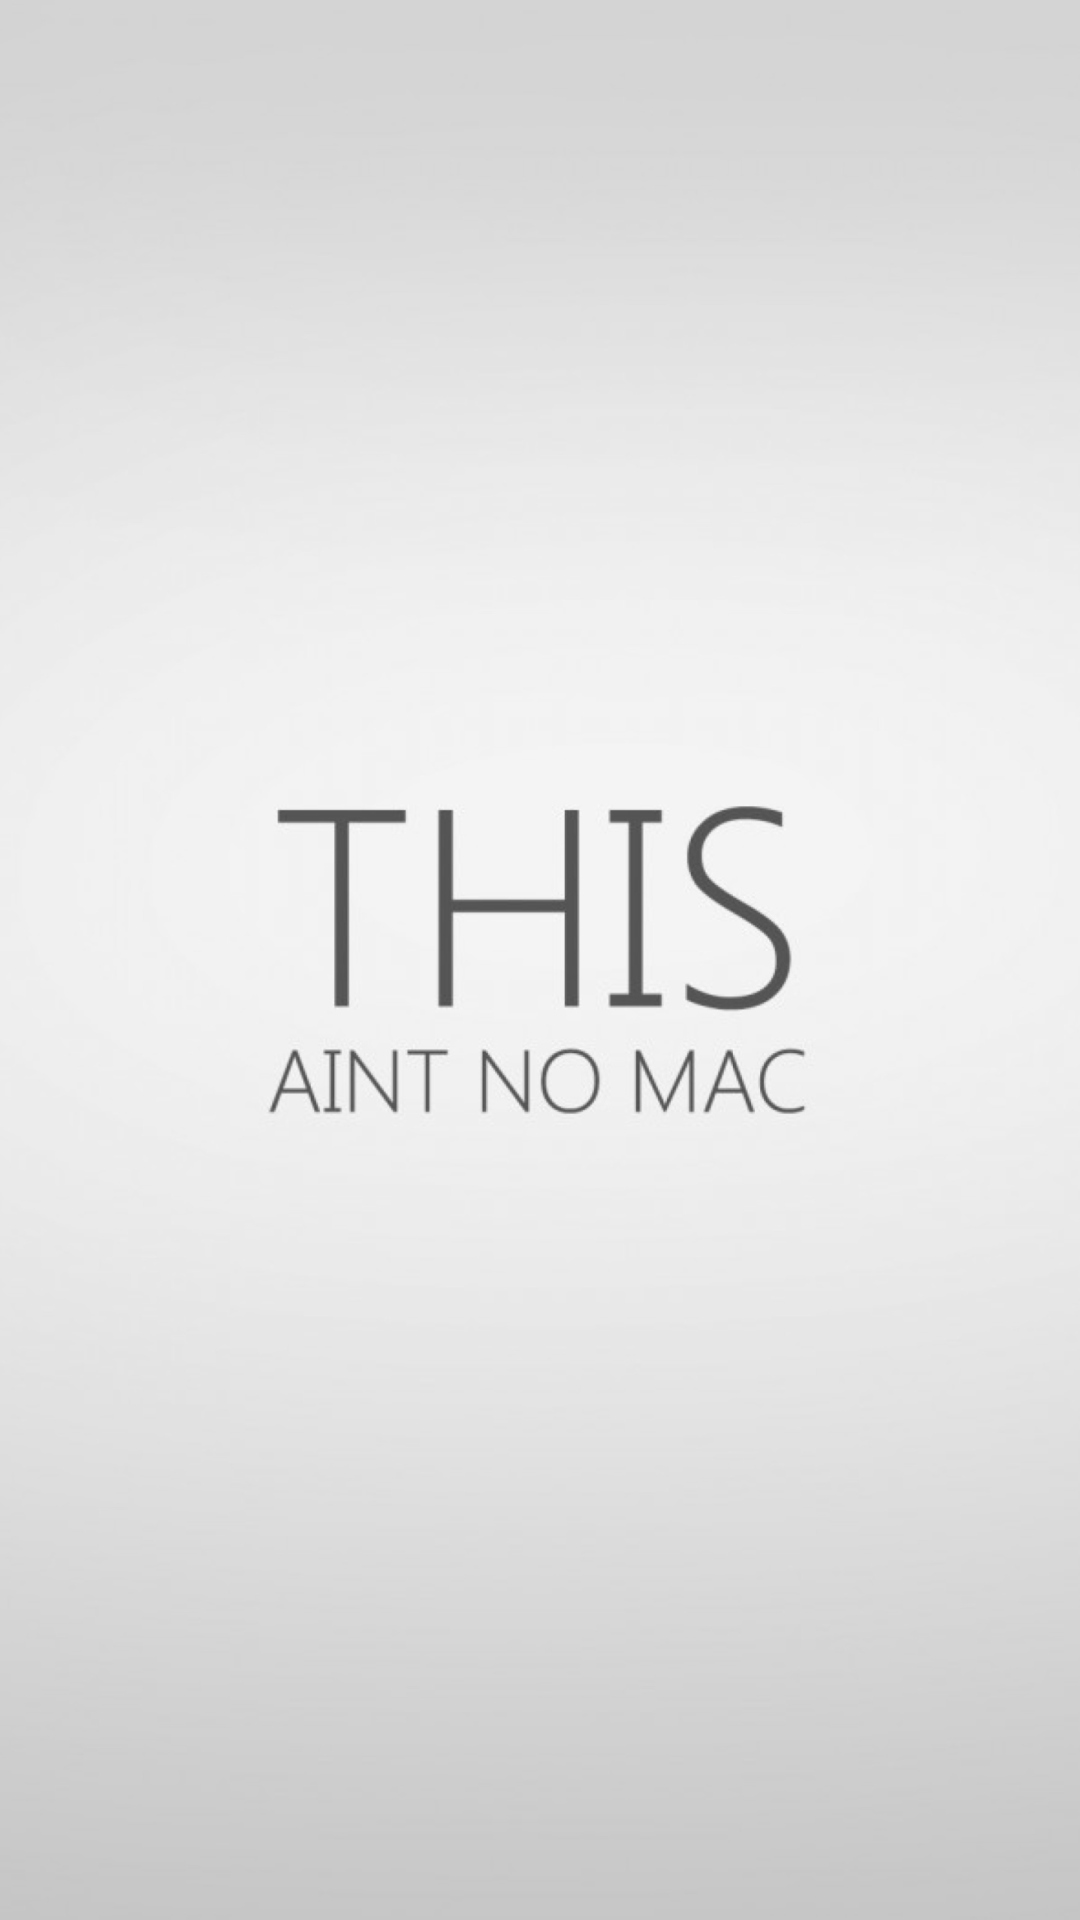 Ain't No Mac wallpaper 1080x1920